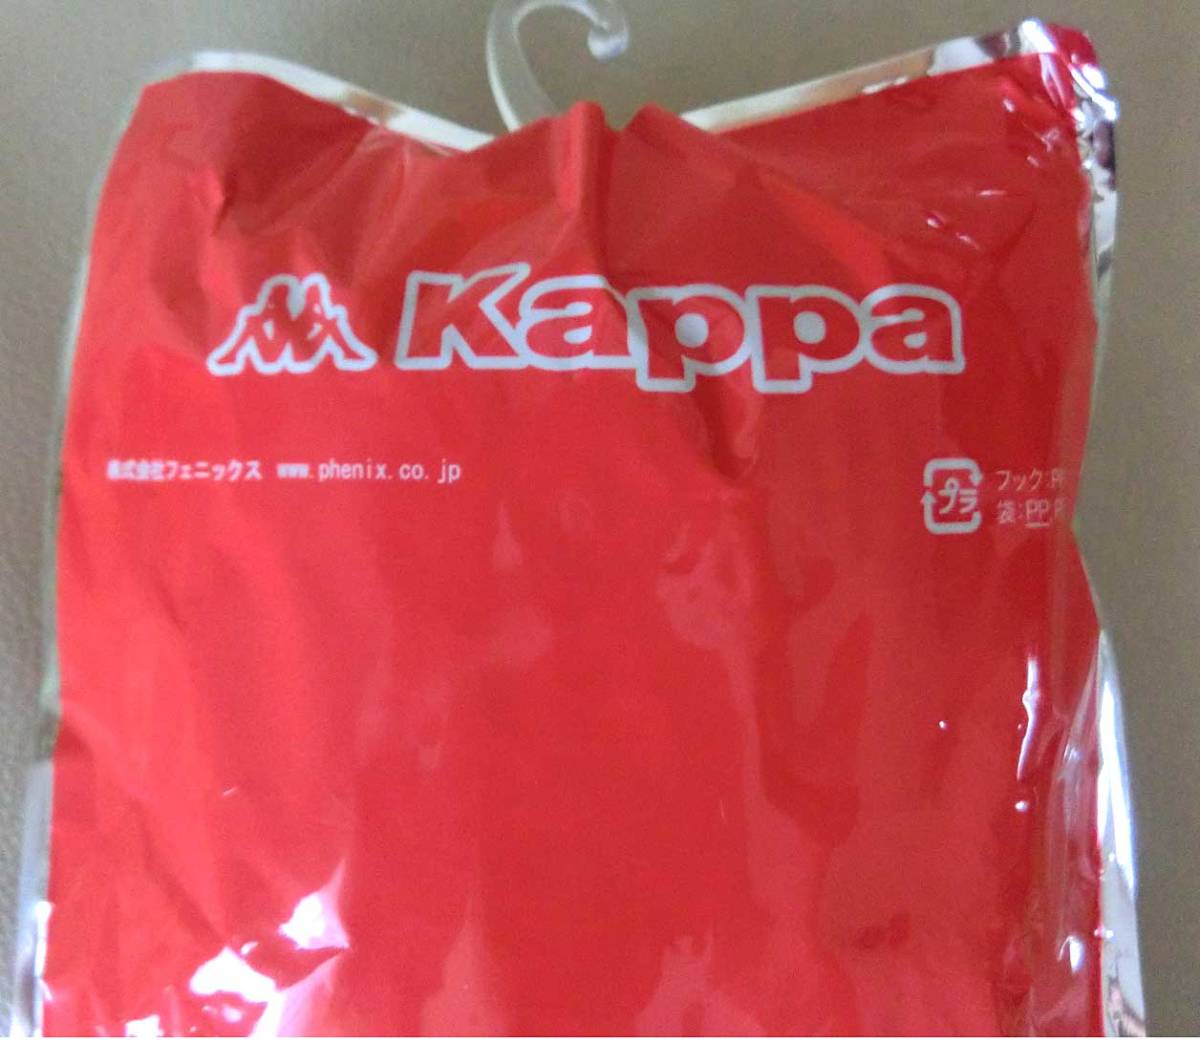 新品 ★ Kappa オレンジ F 25㎝～27㎝ カッパ サッカー ストッキング ソックス KFEA7123 日本製 フットサル フリーサイズ メンズ_画像4